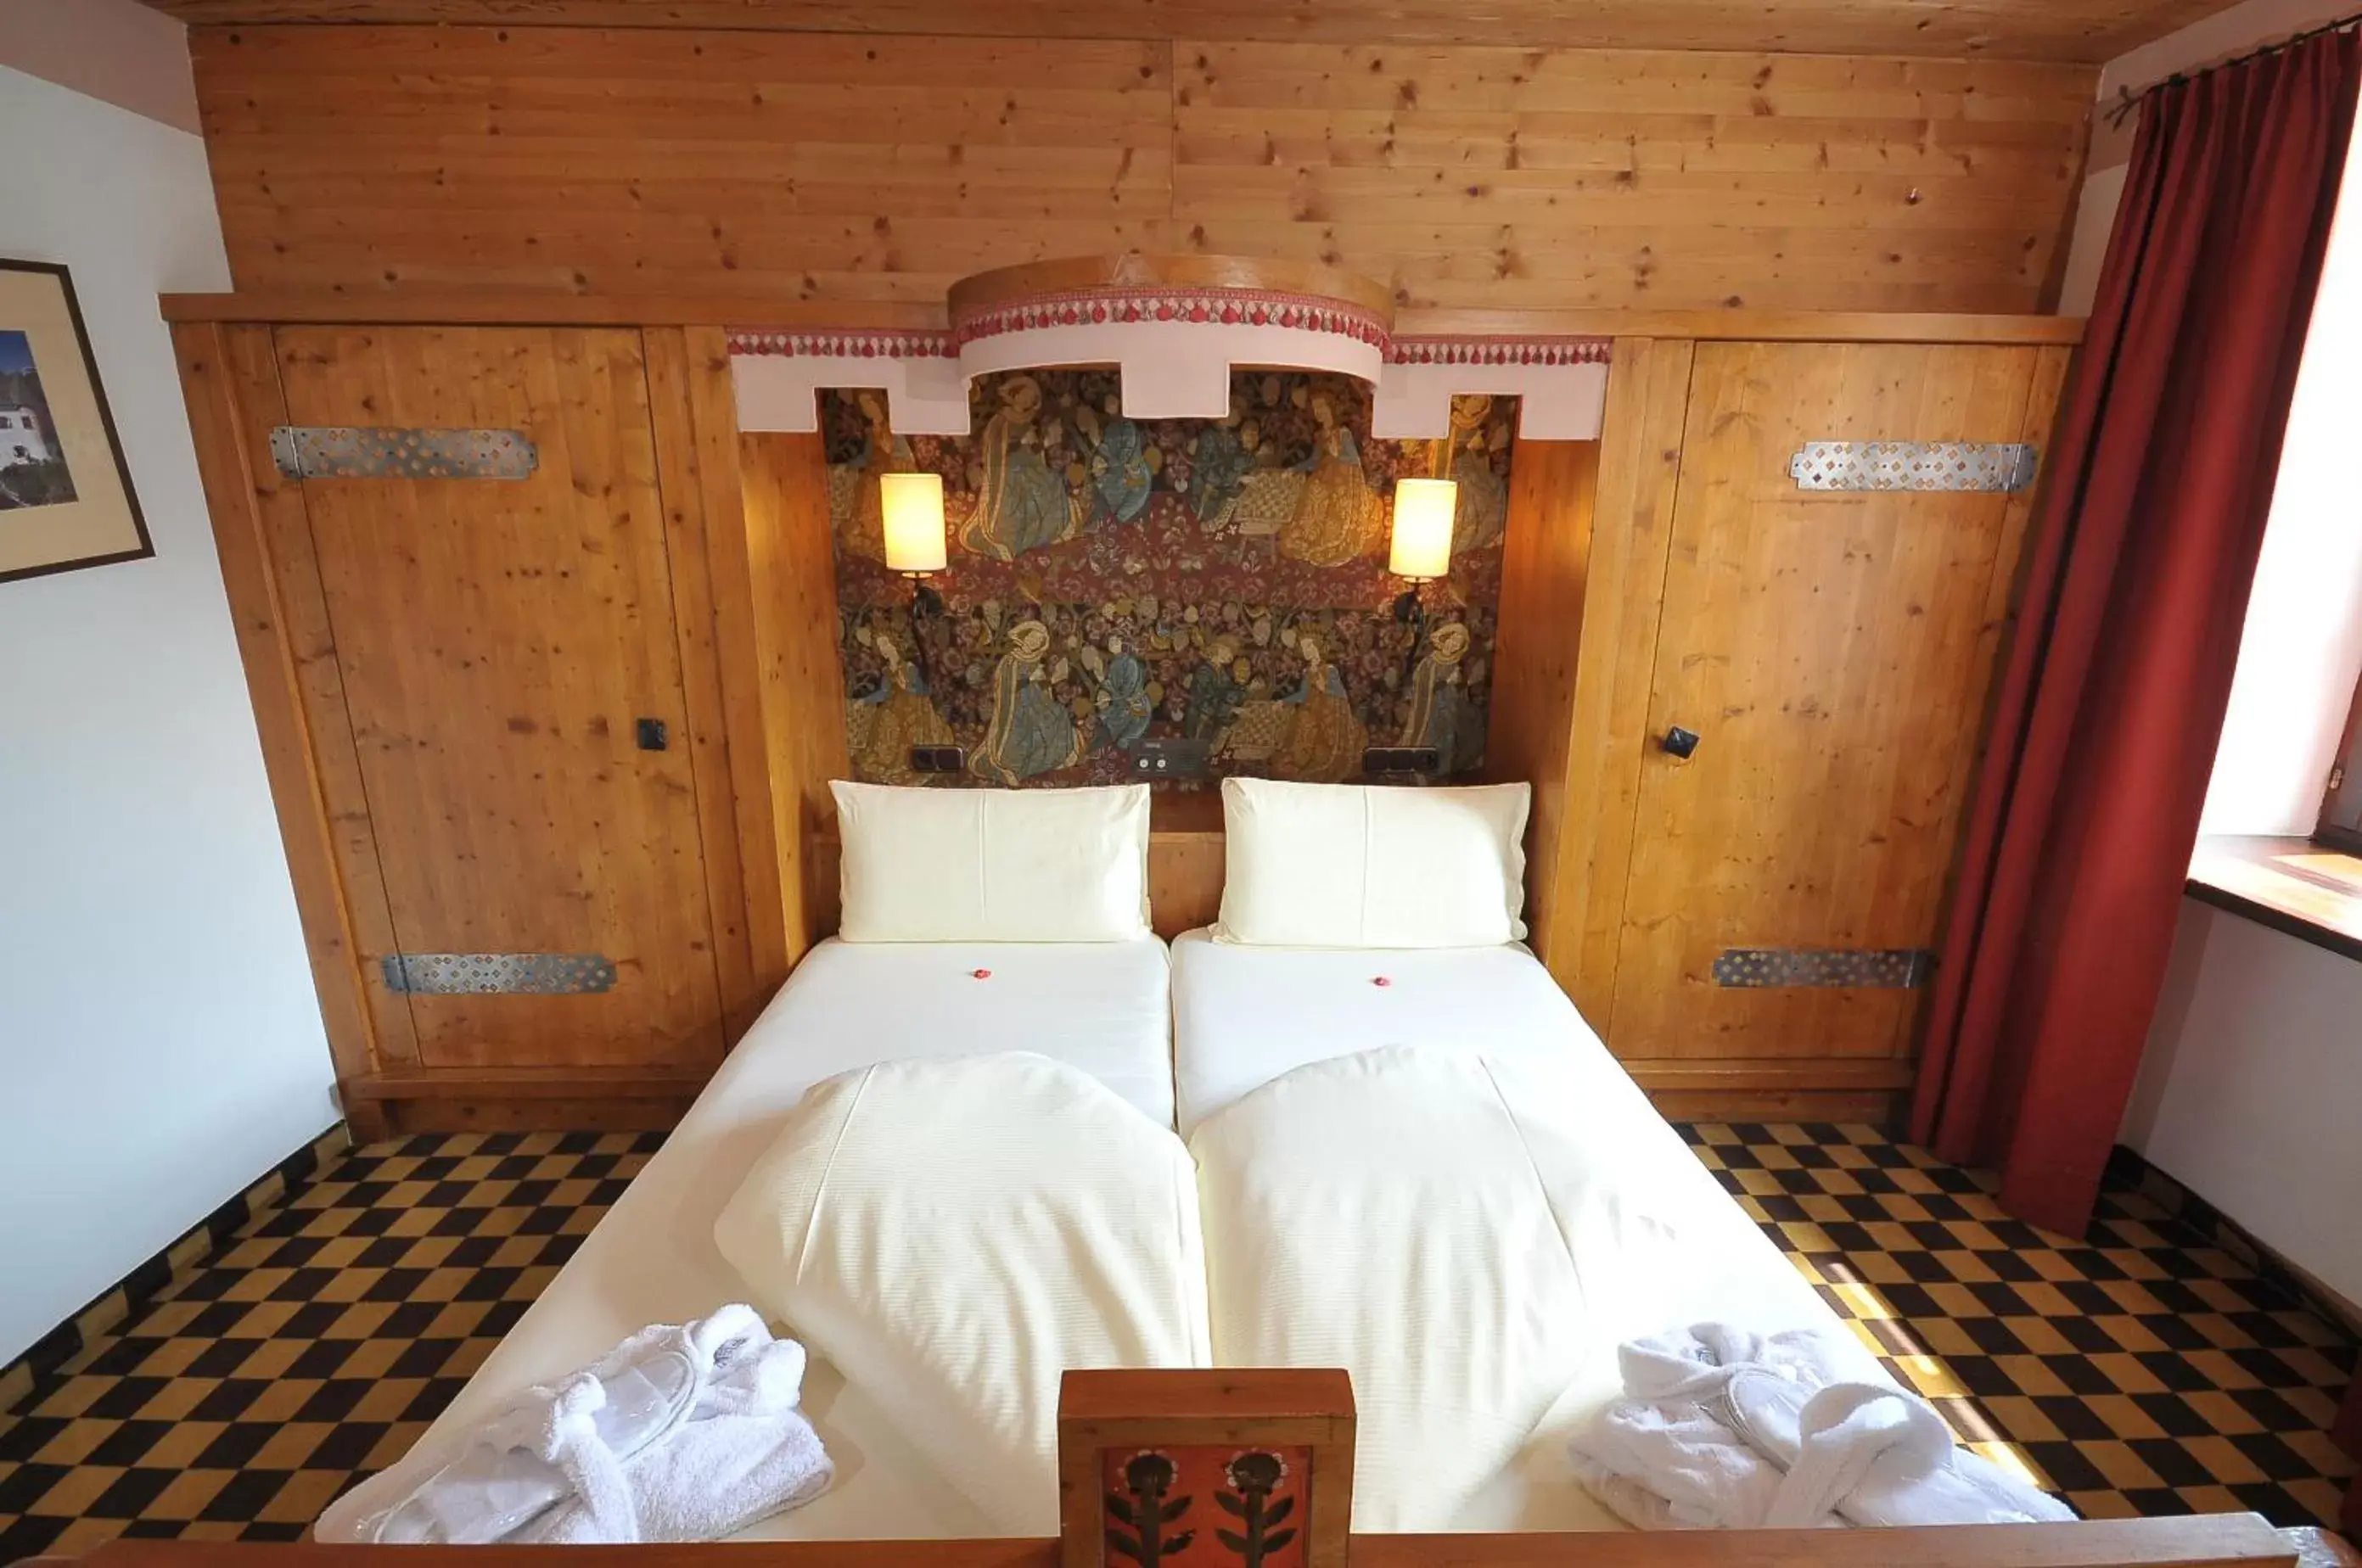 Bed, Room Photo in Family Hotel Schloss Rosenegg